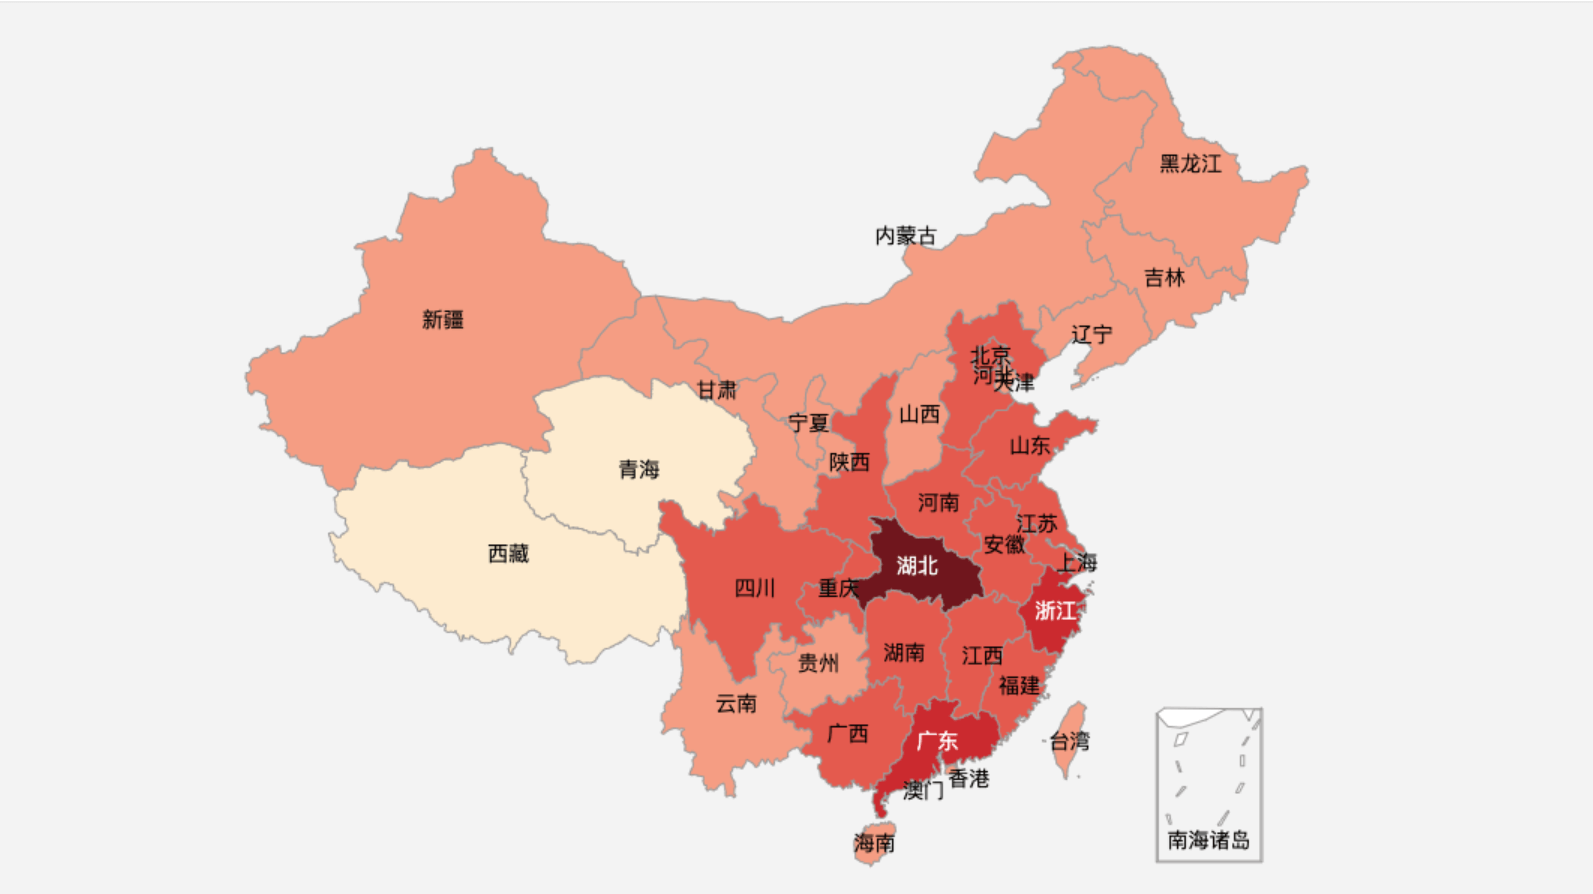 新型冠状病毒疫情对在美华人及亲属出行的影响